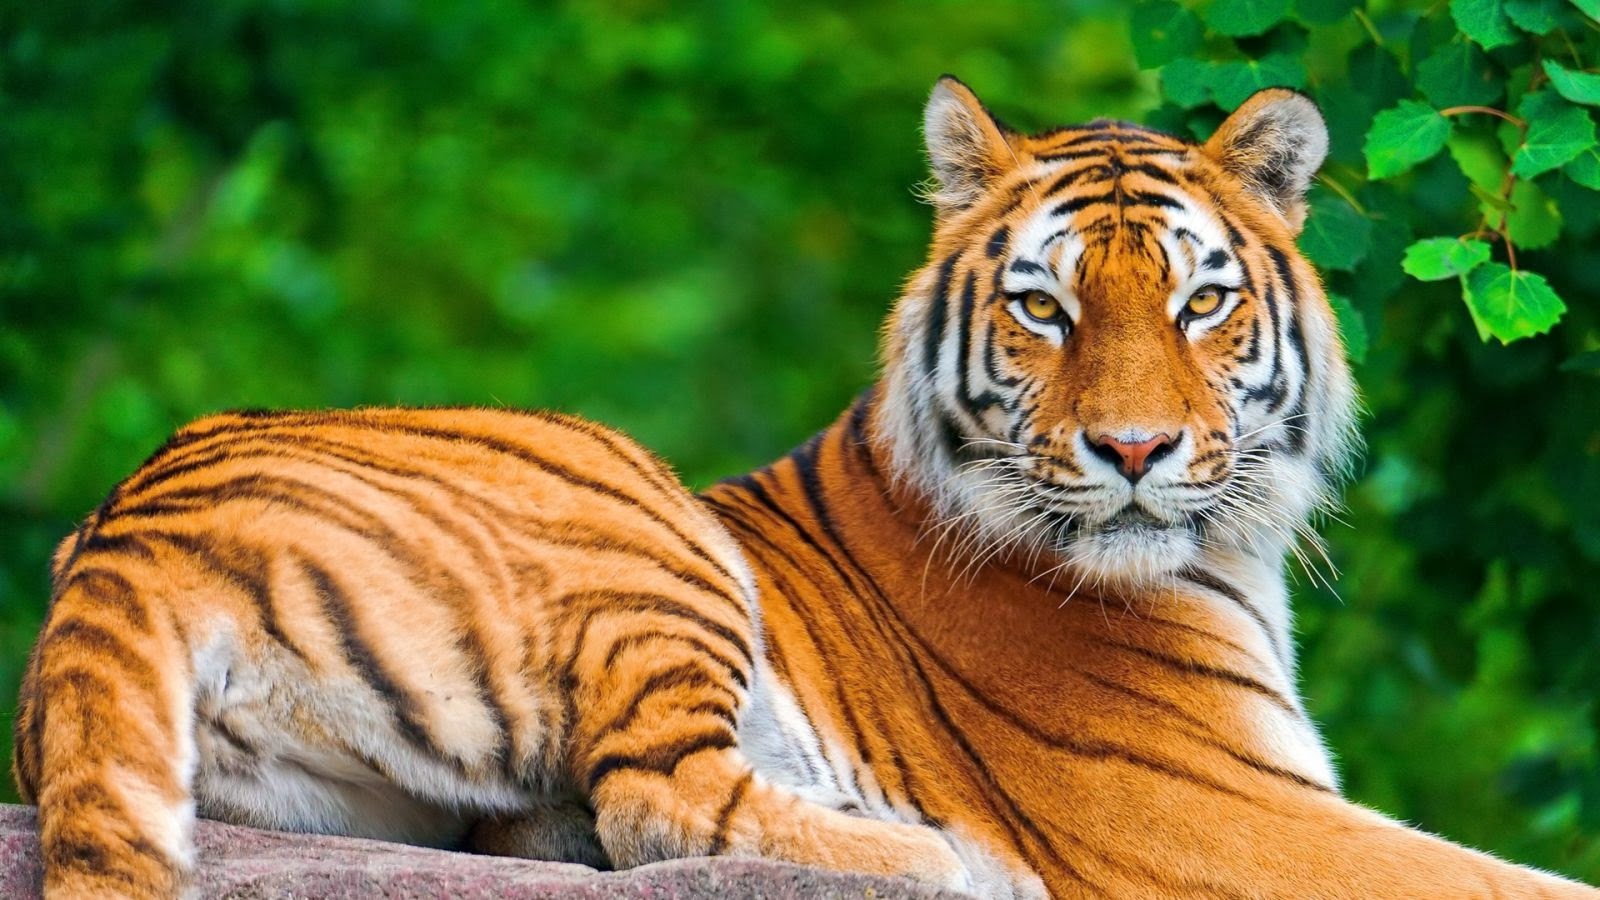 47+] Bengal Tiger Wallpaper Desktop - WallpaperSafari